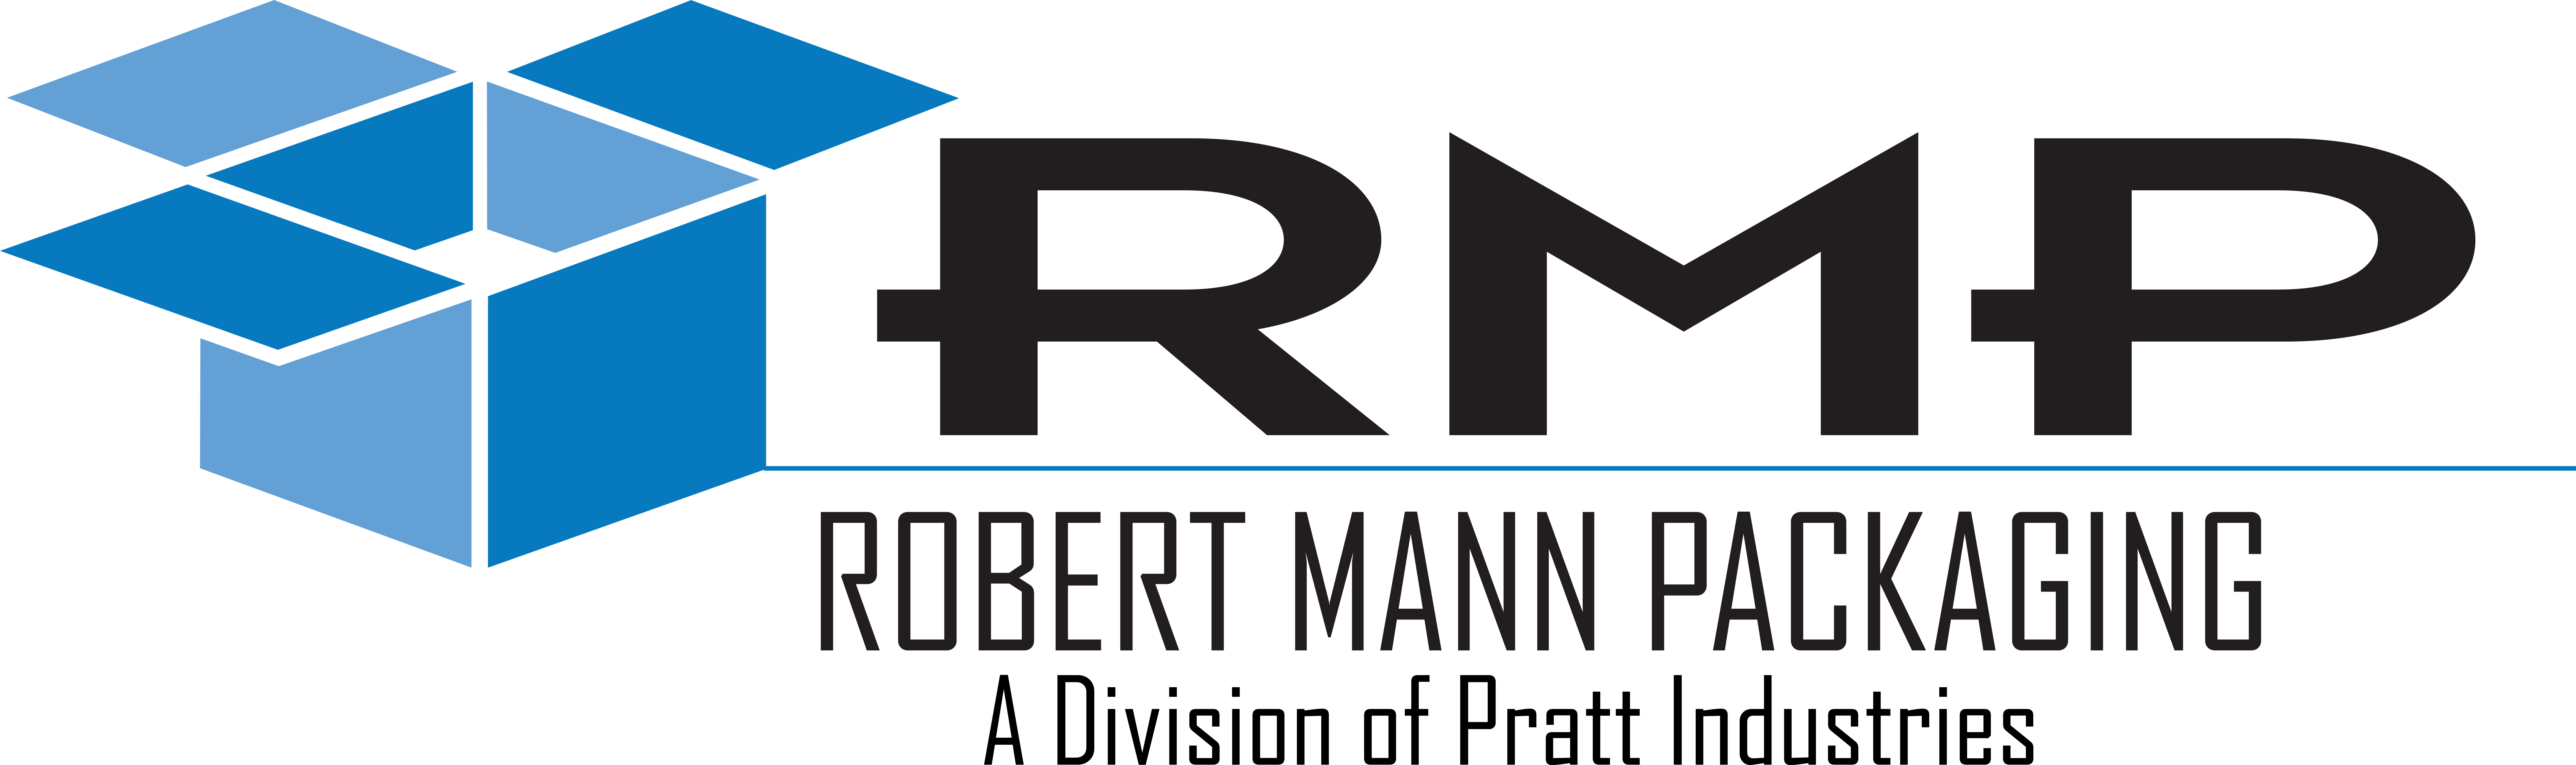 Robert Mann Packaging logo